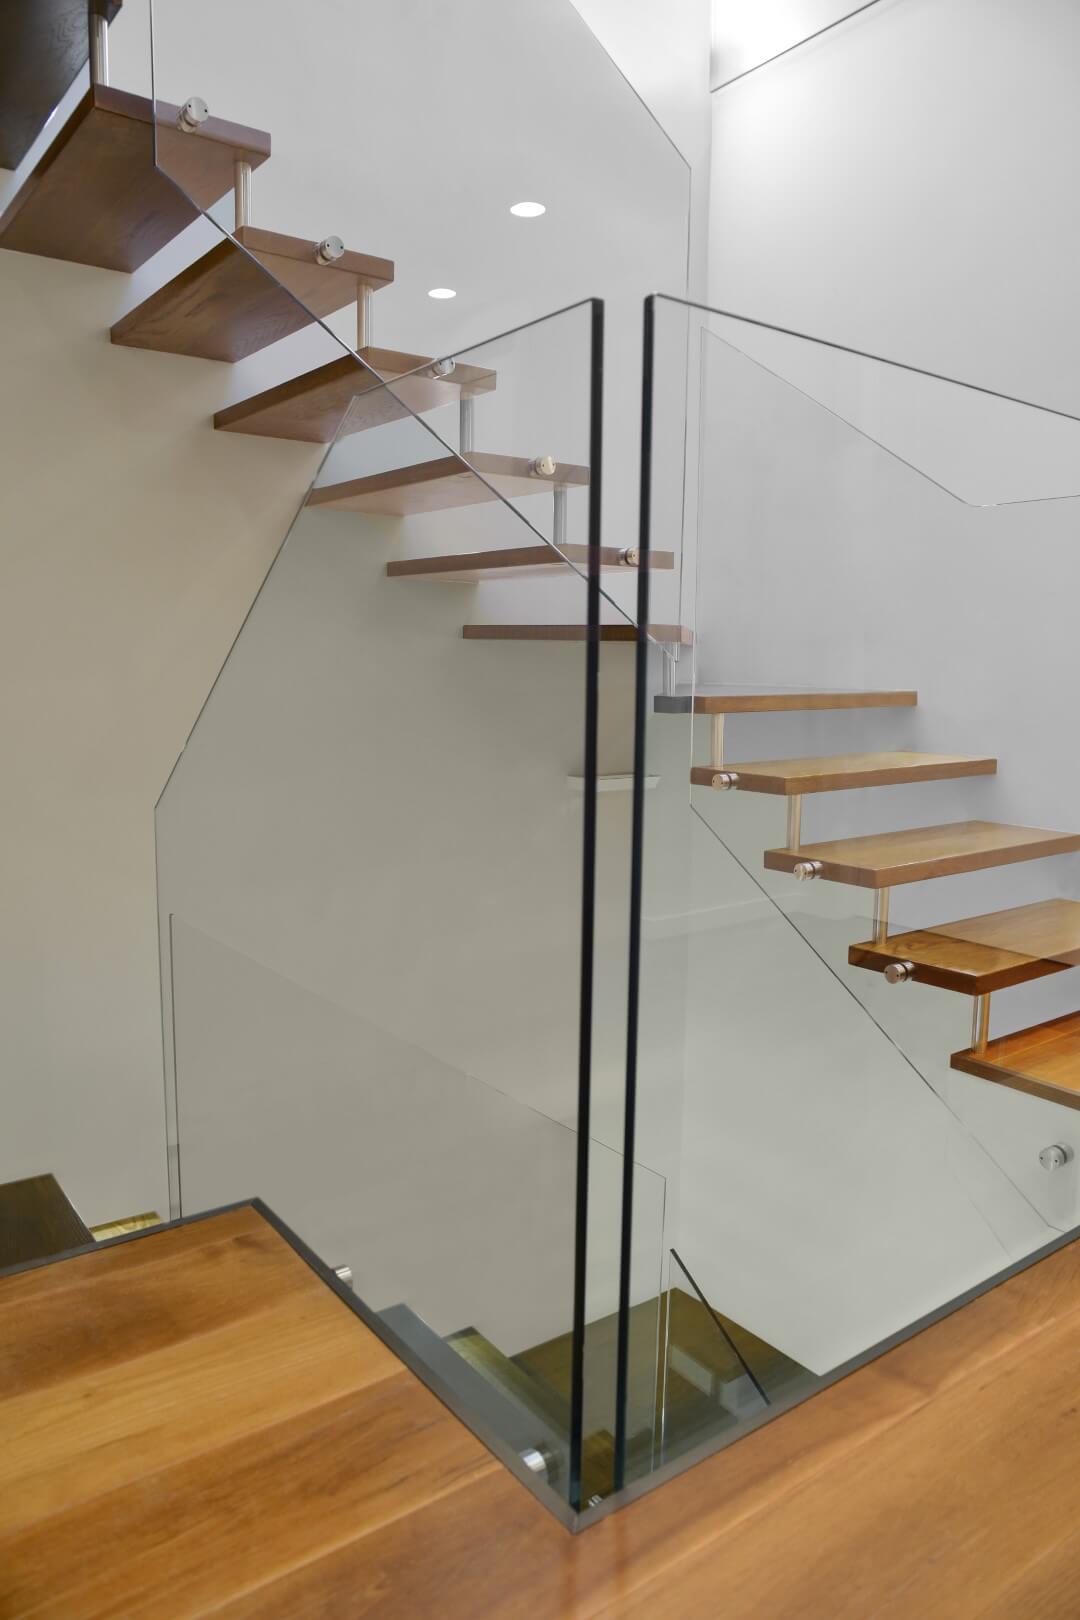 שני גרמי מדרגות עץ תלויות מבעד למעקה הזכוכית